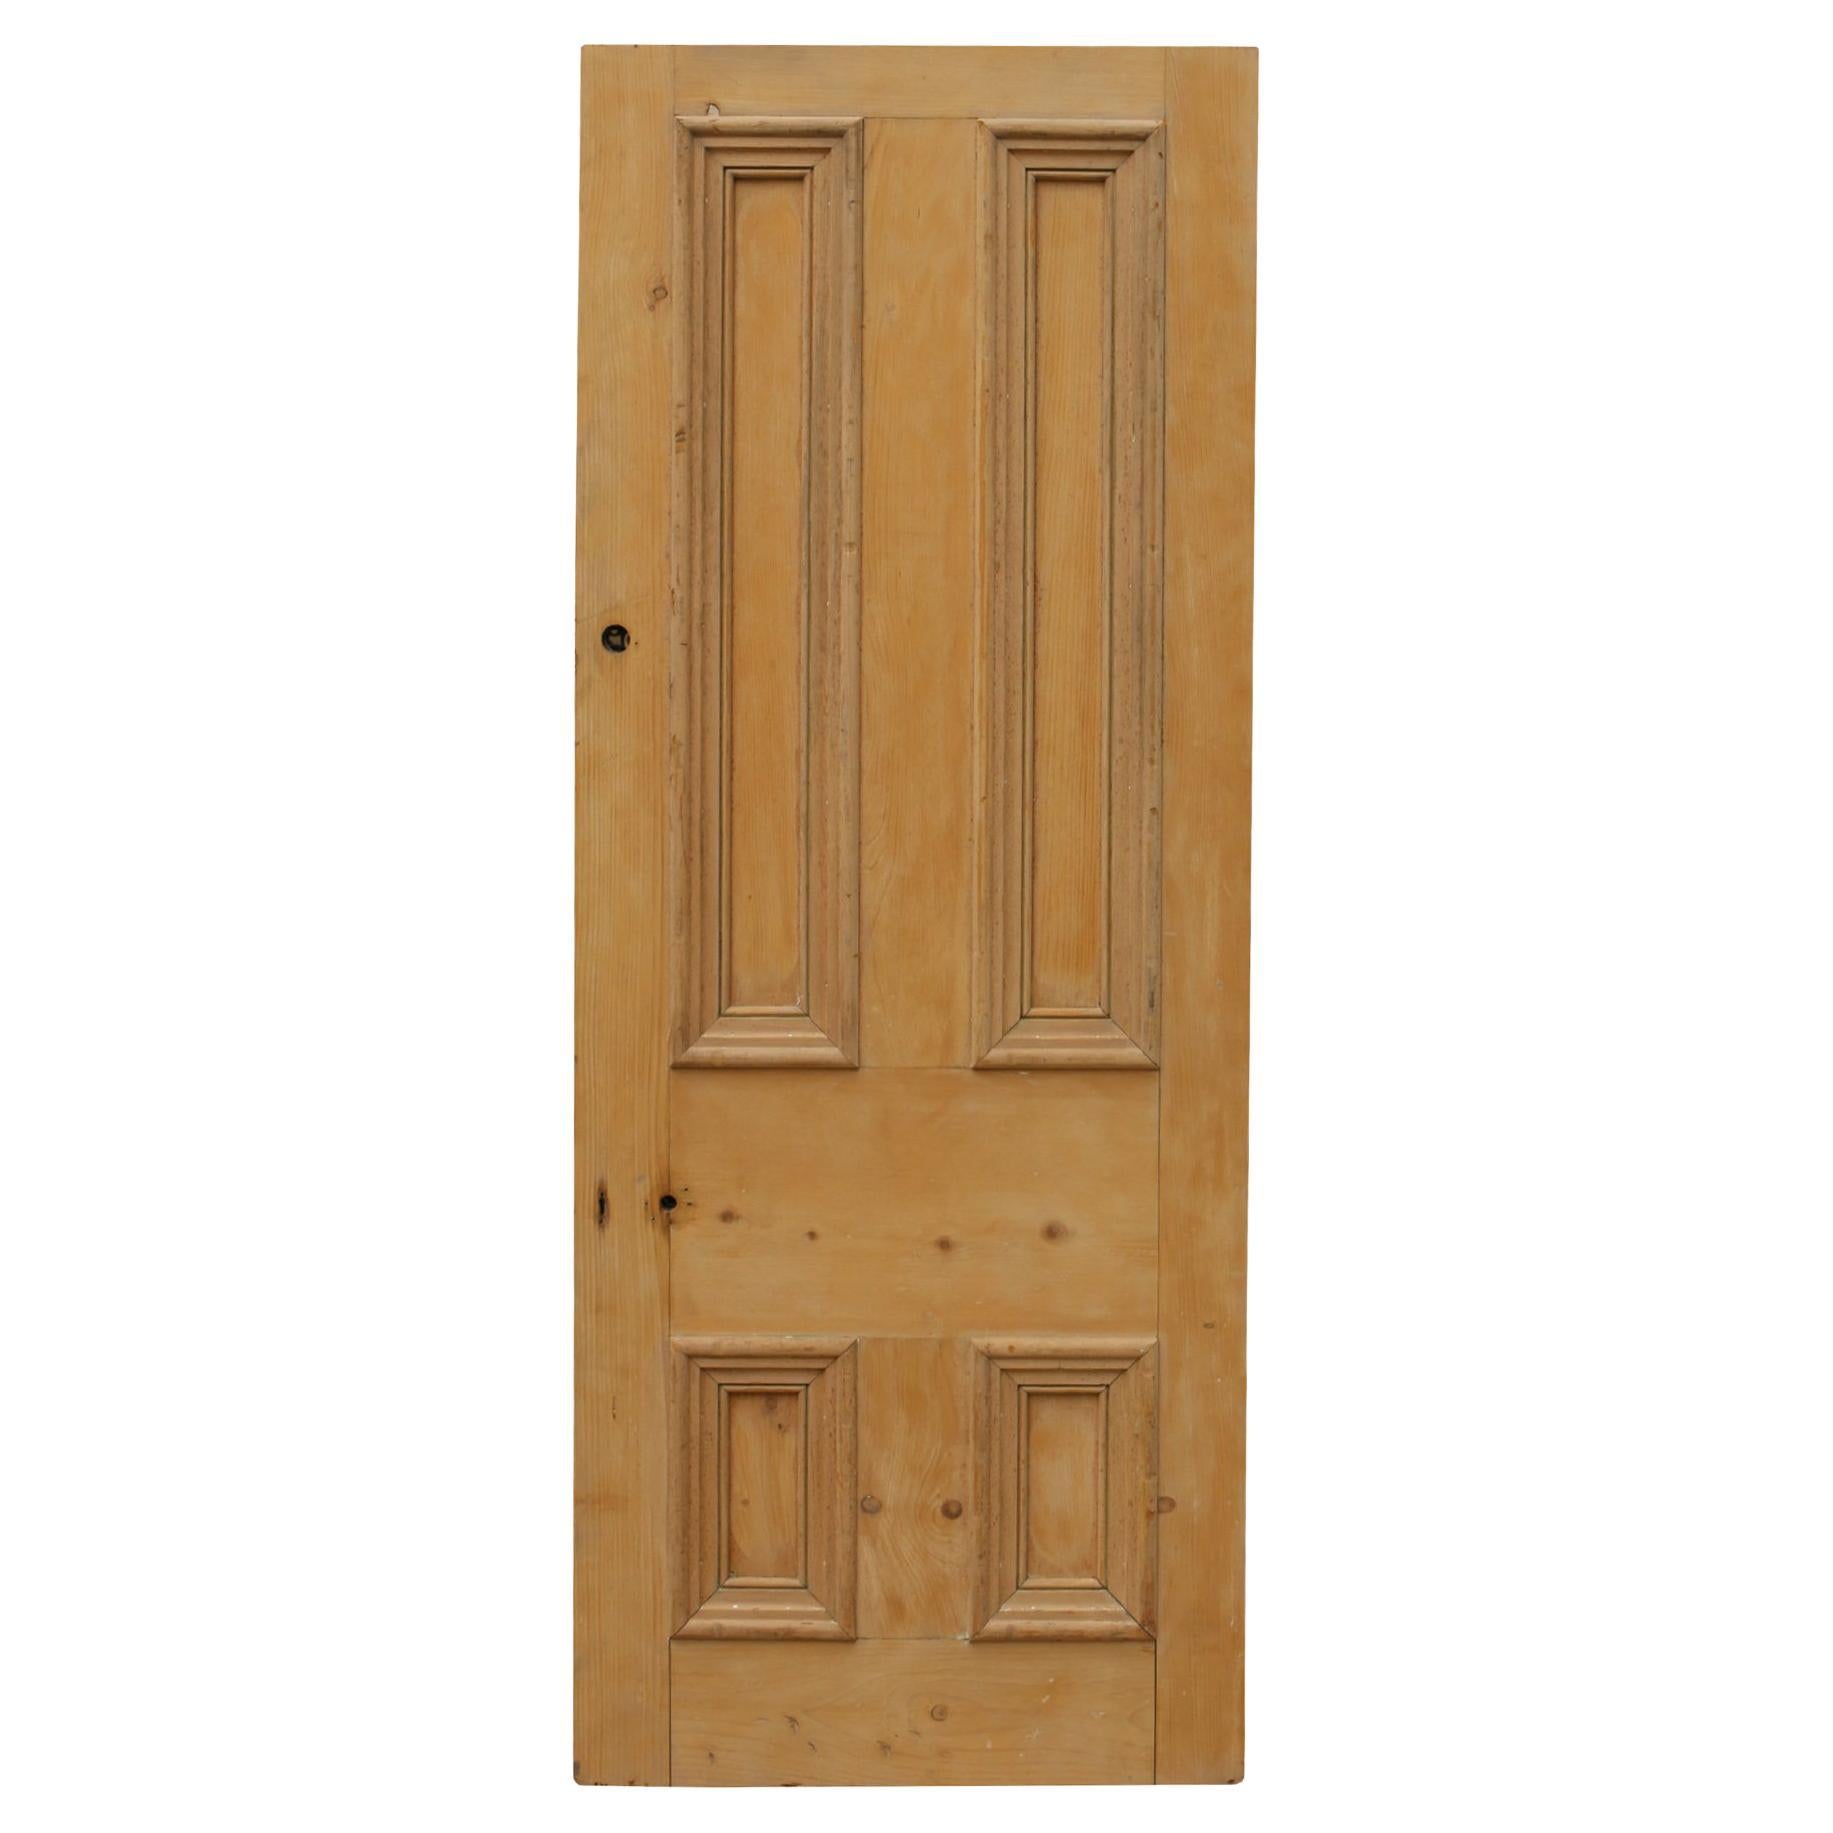 Reclaimed Pine Front Door For Sale